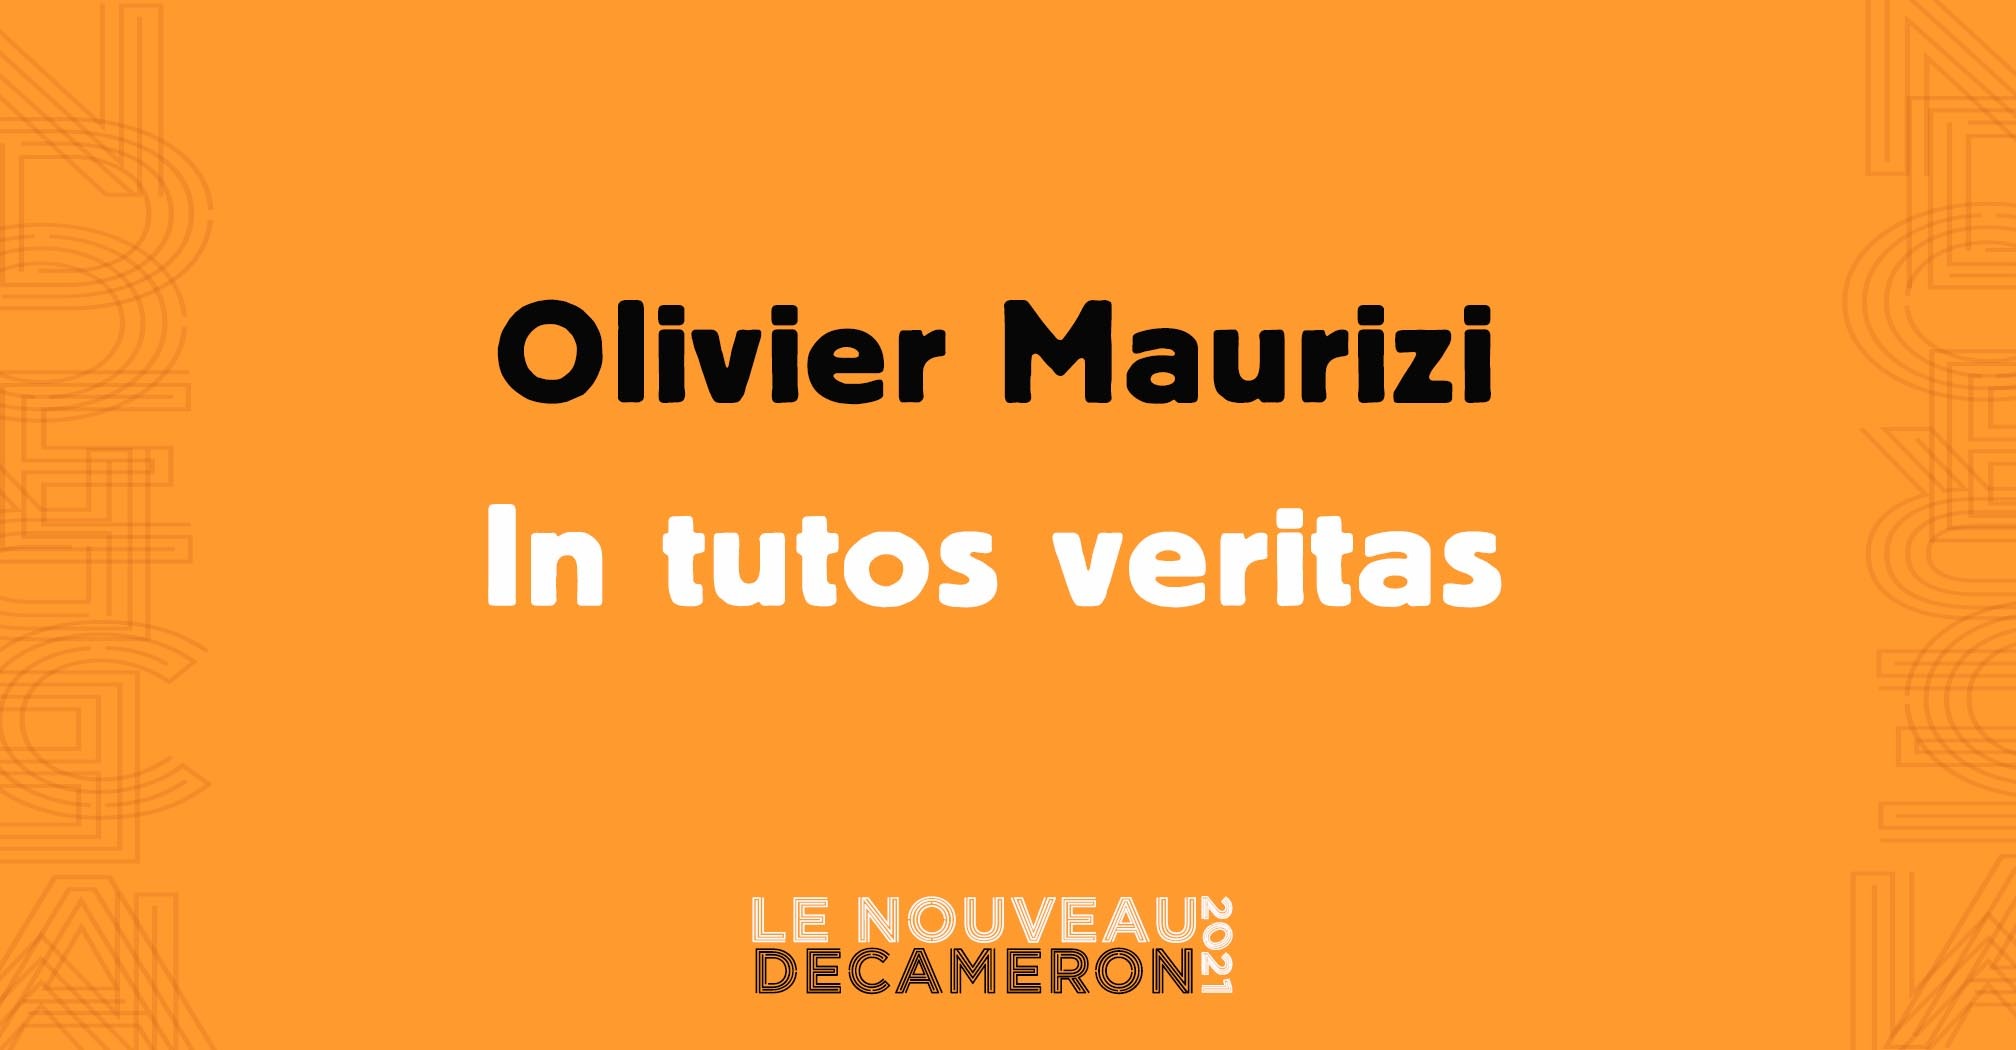 Olivier Maurizi - In tutos veritas